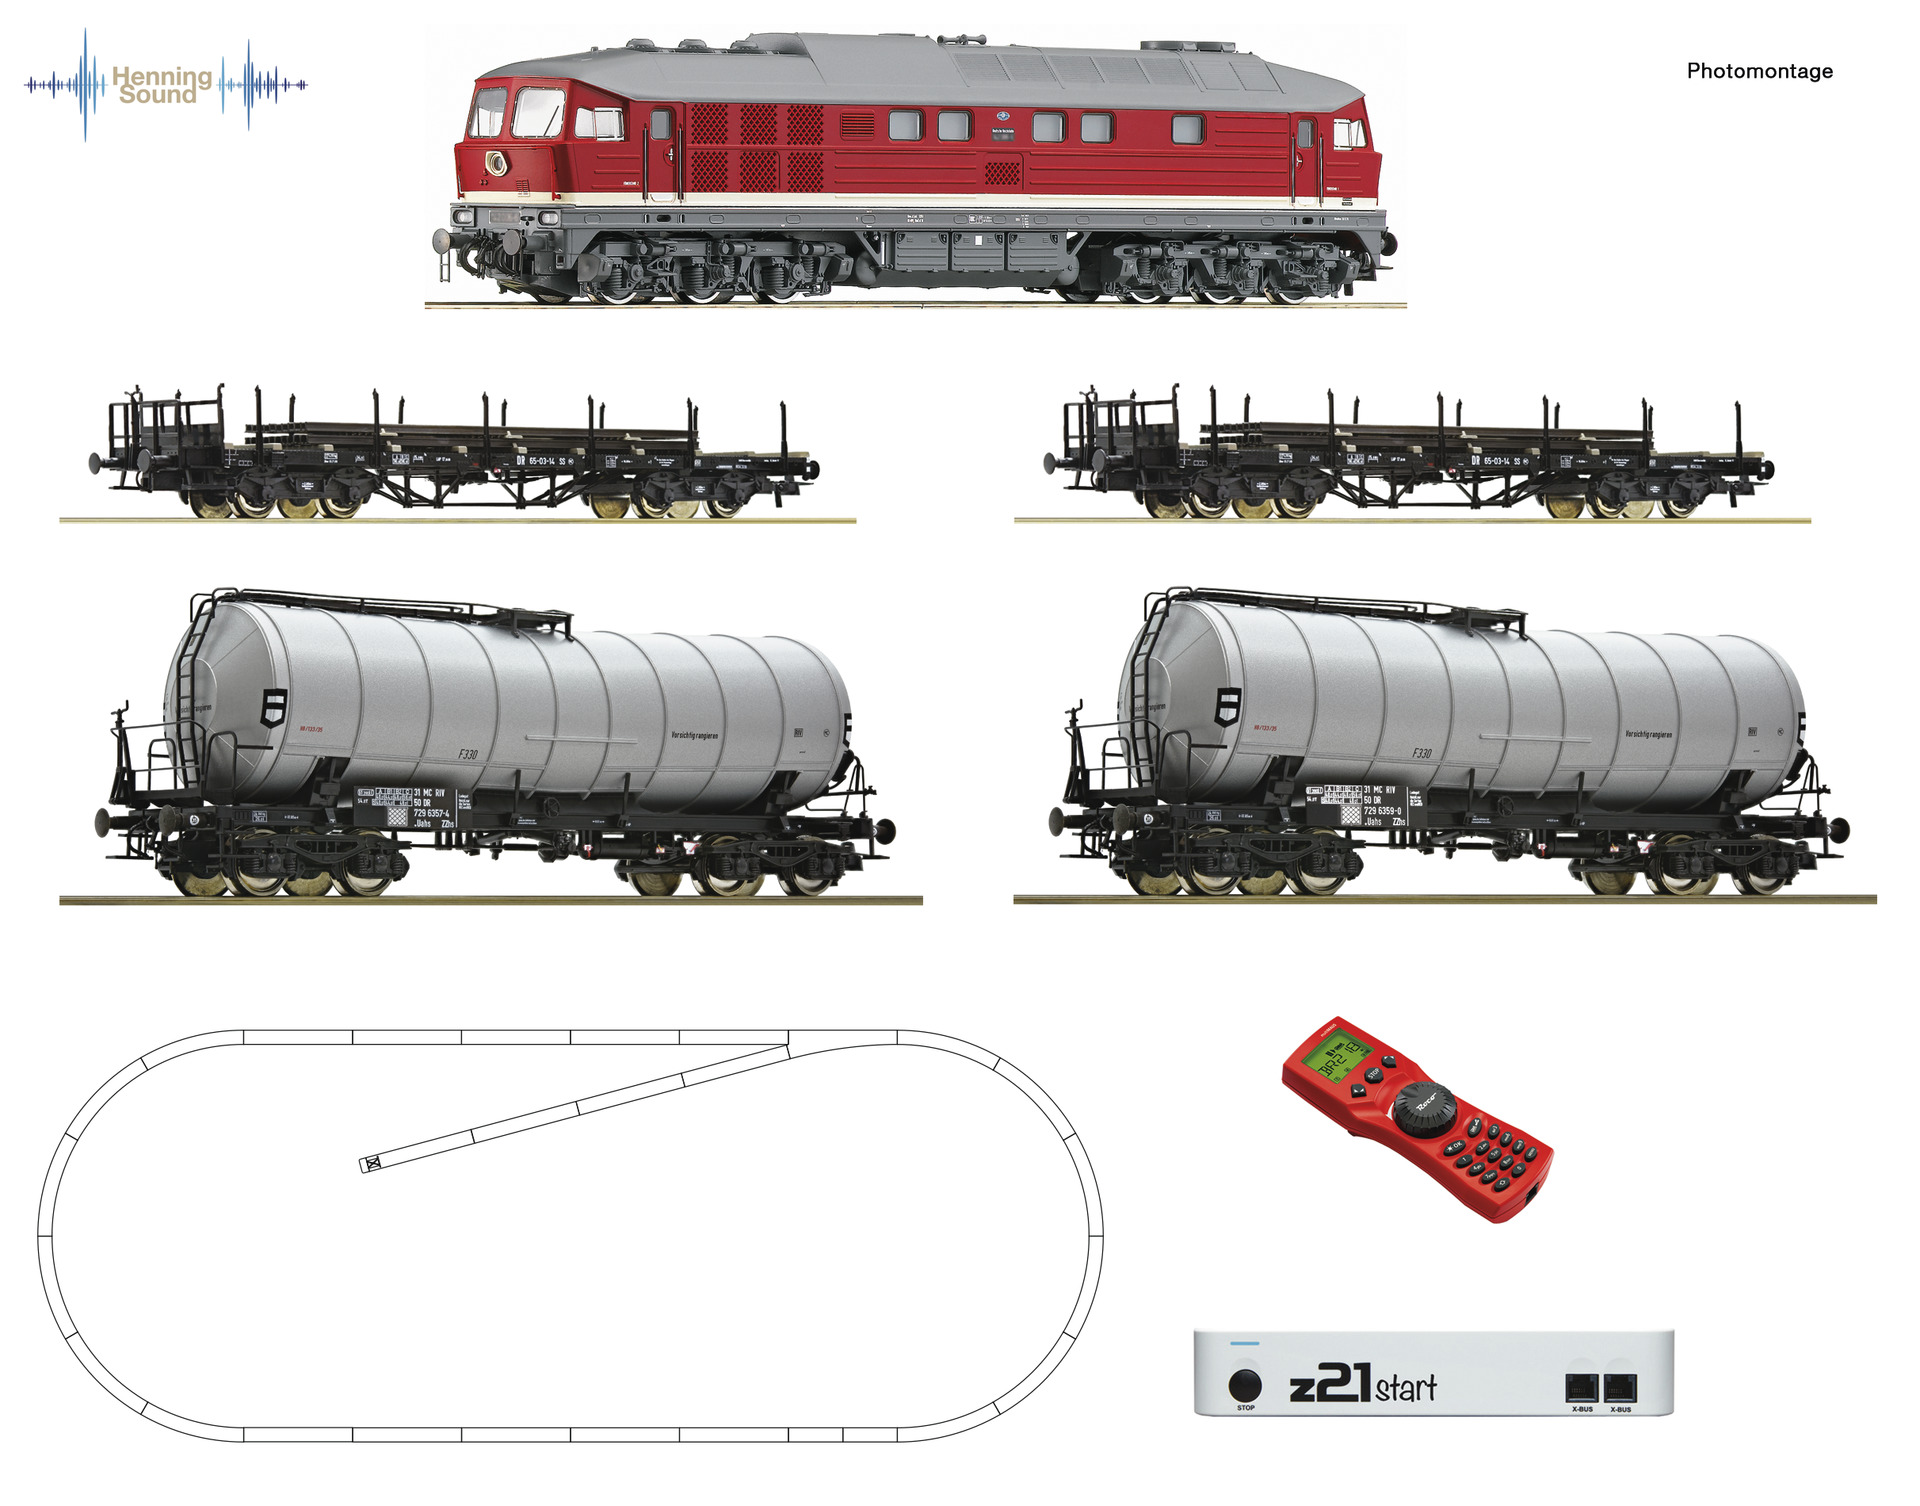 Roco – Set de iniciación Loc. Diesel clase 142, DR, Con cuatro vagones M., D. Sonido, Z21 y mando, Ref: 51328.